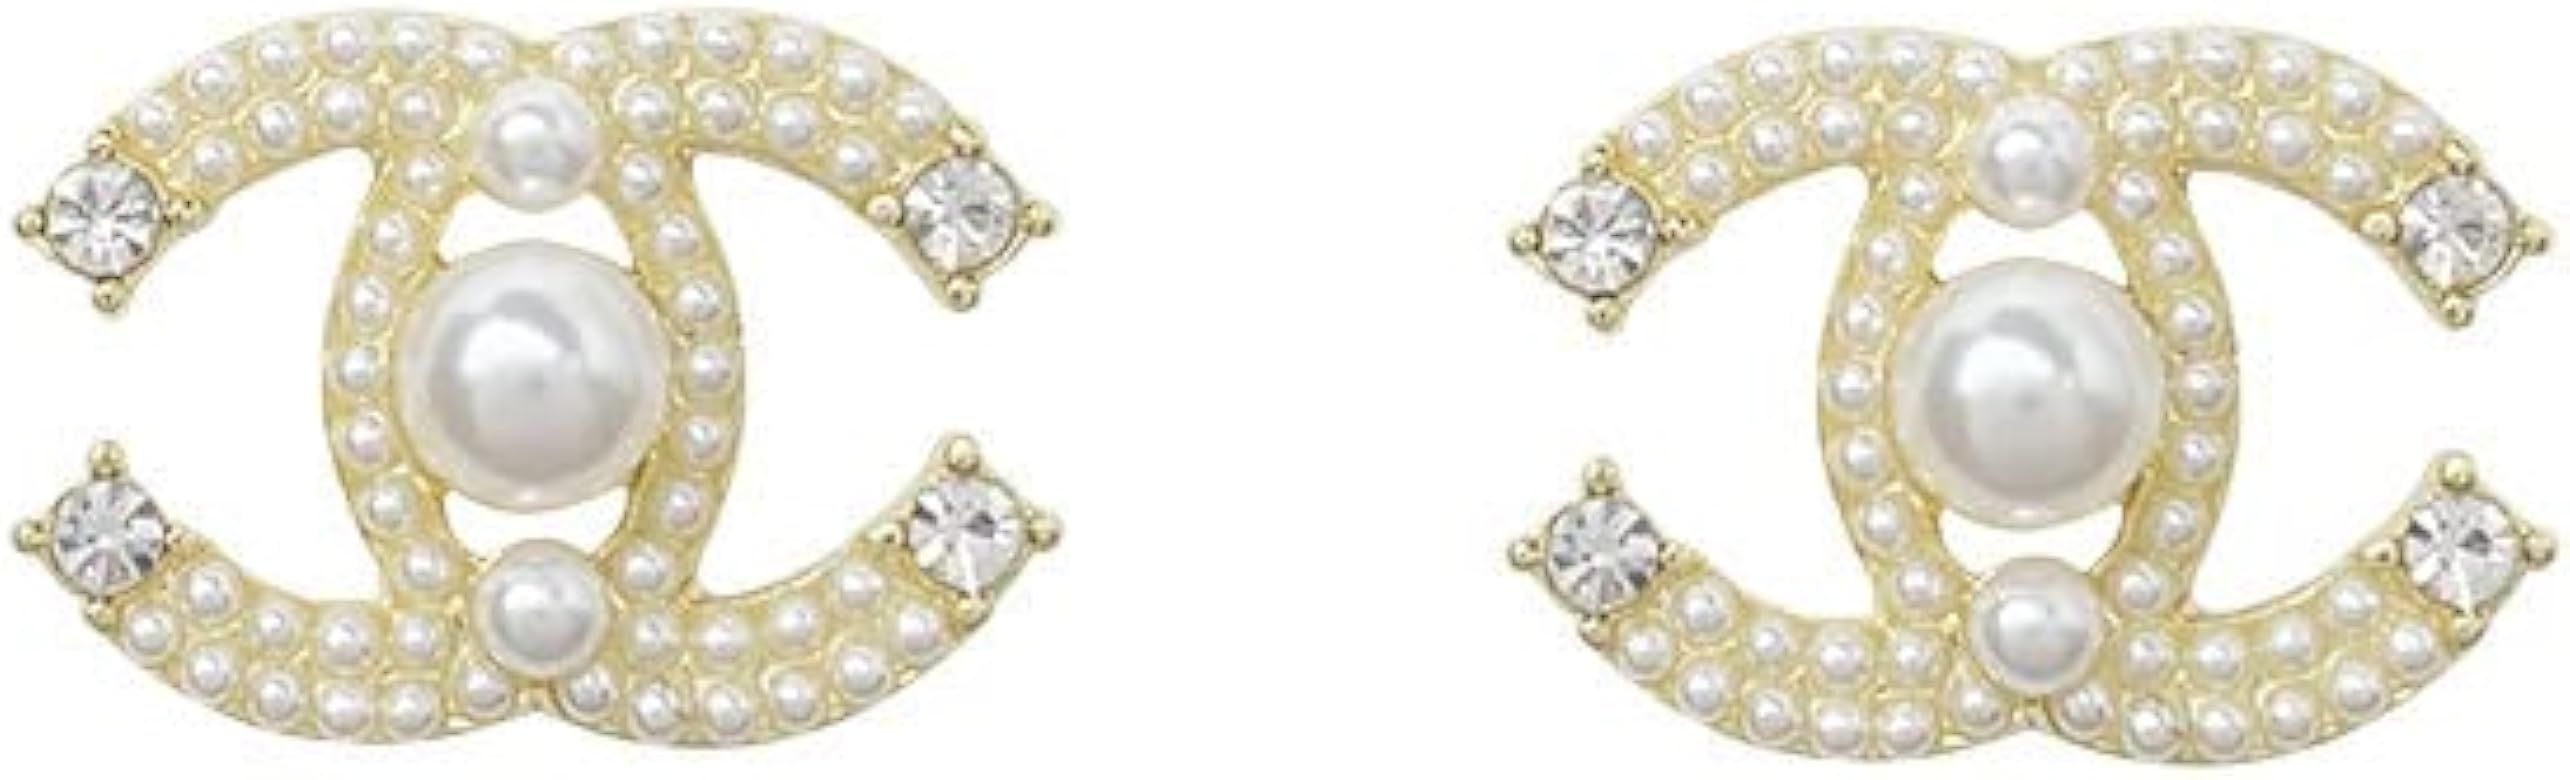 C Alphabet Earrings Gold Earrings Earrings for Women Lightweight Gold Rhinestone Pearl Stud Earri... | Amazon (US)